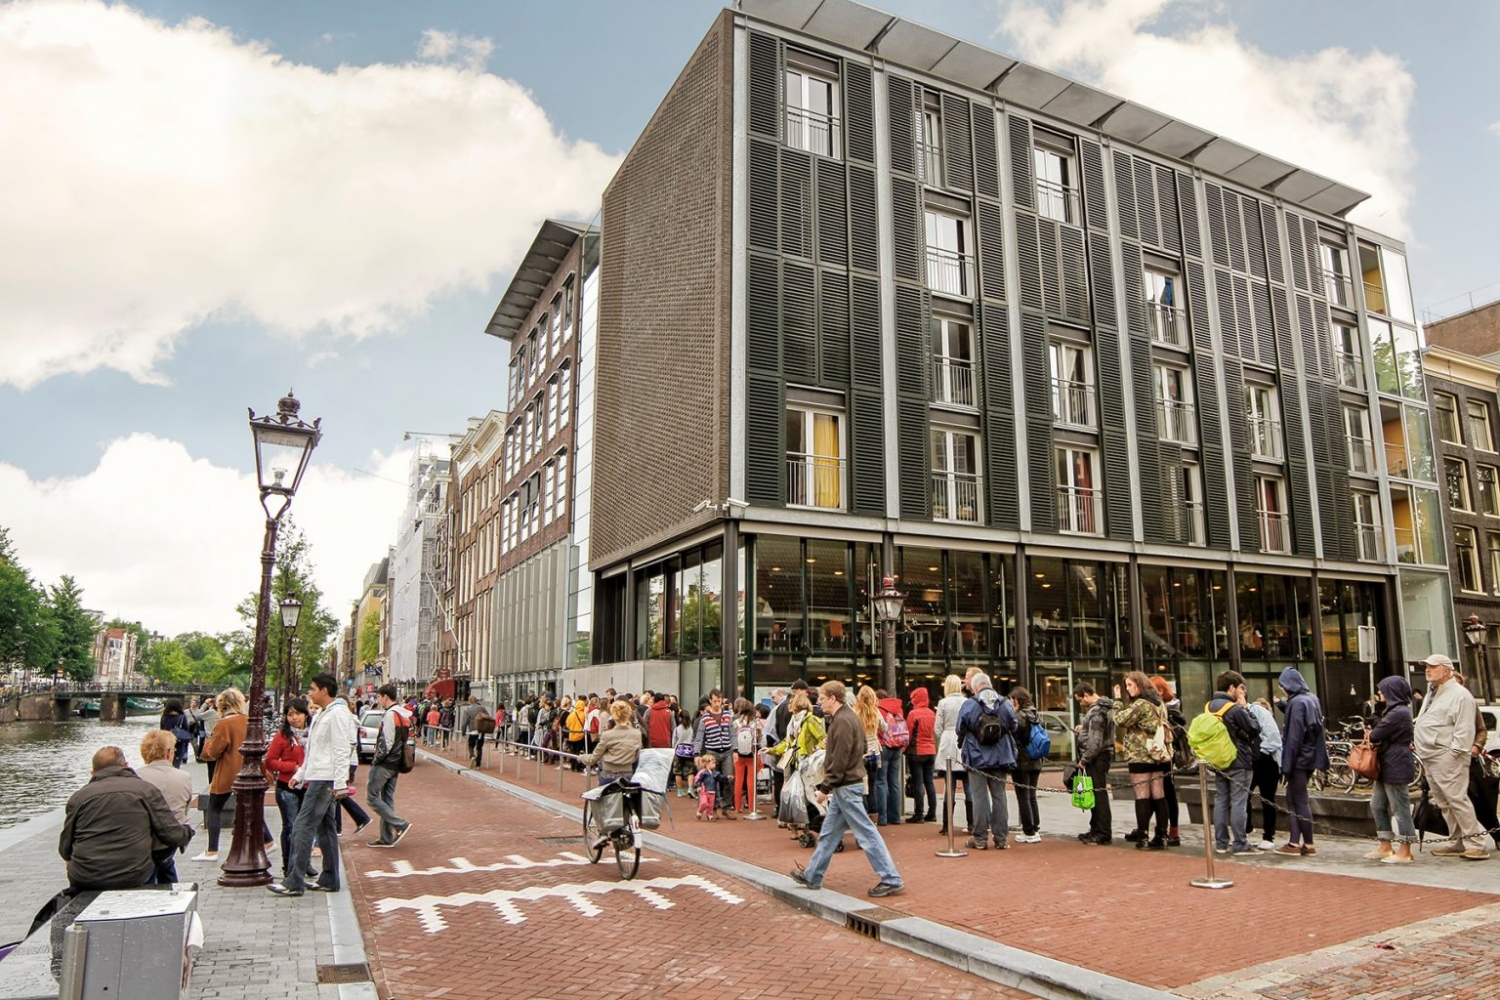 Ghé thăm 5 bảo tàng nổi tiếng ở Hà Lan với kiến trúc ấn tượng